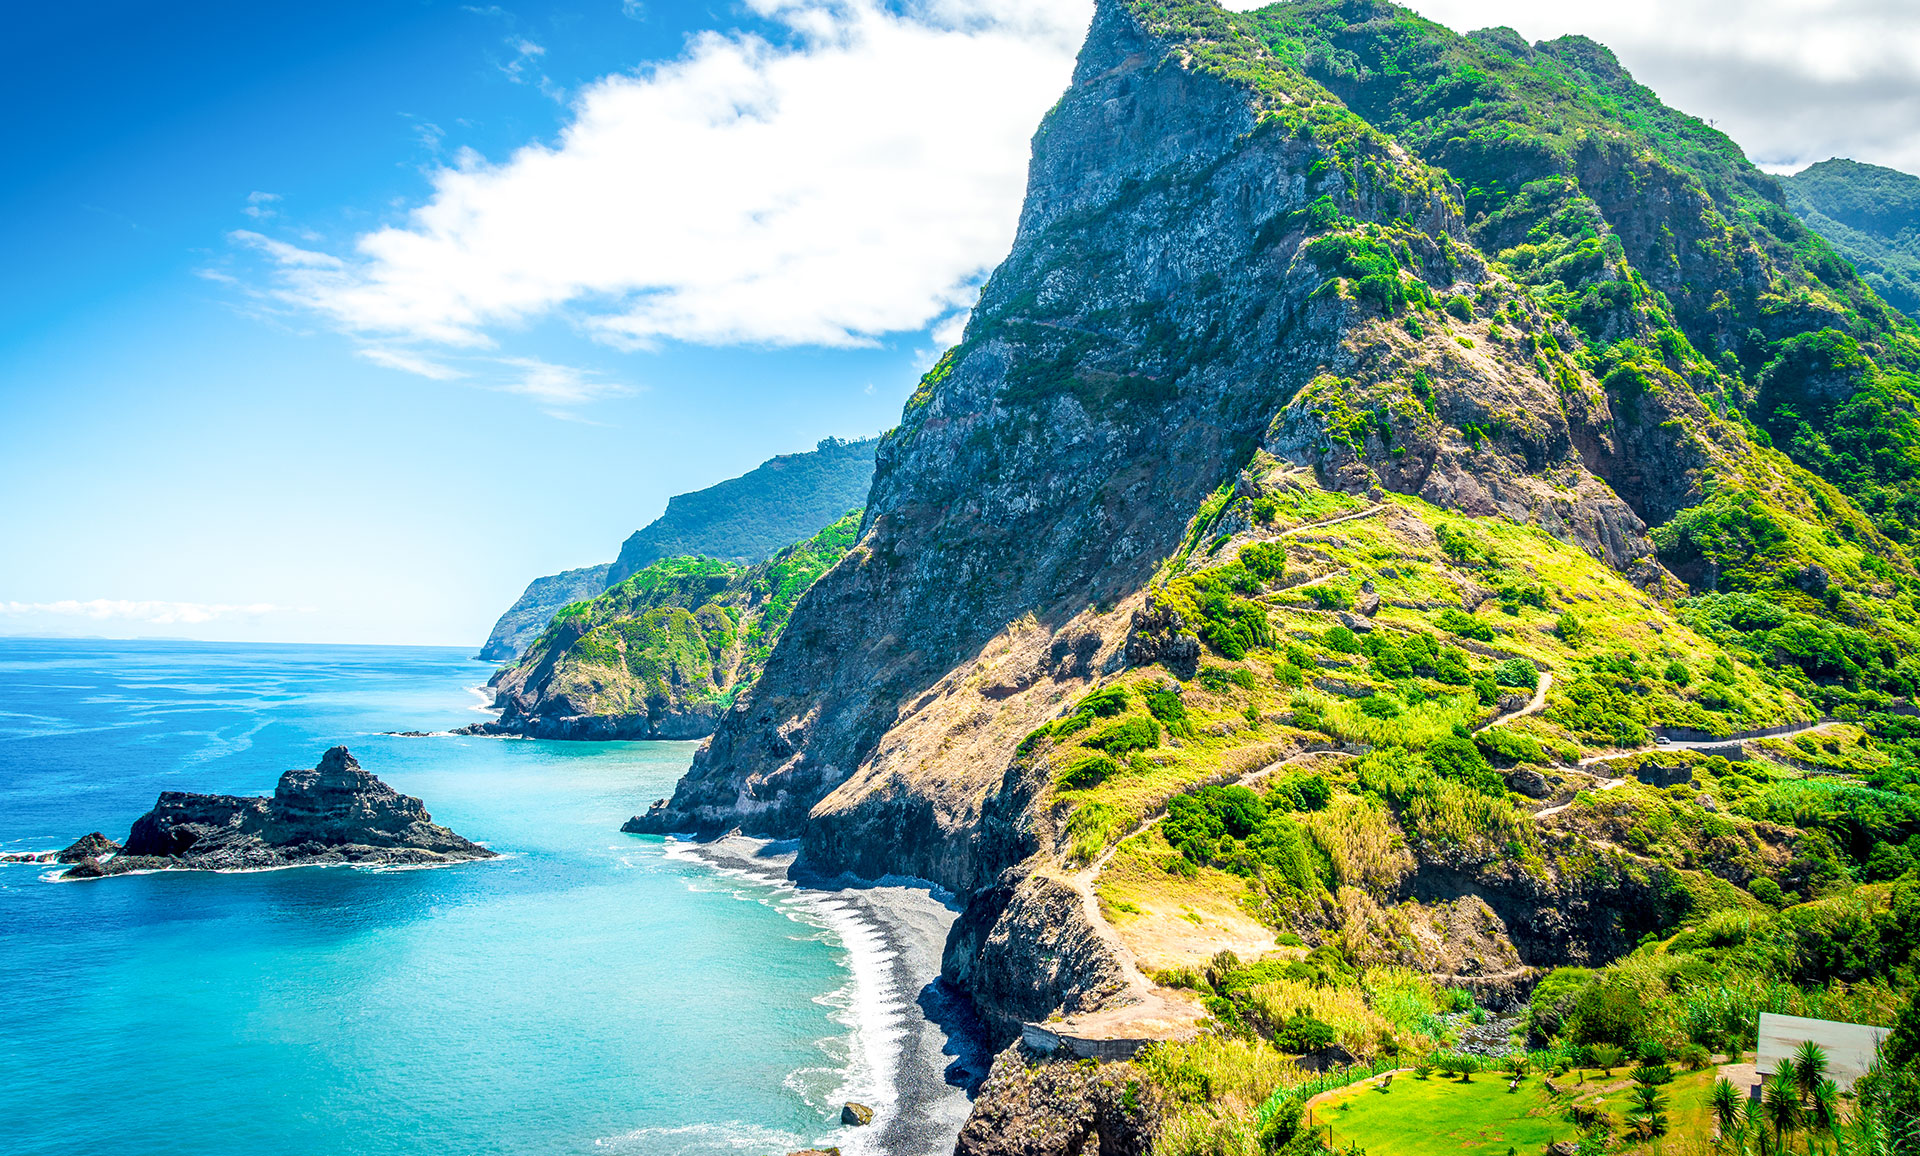 Grüne Berglandschaft, Blütenzauber und wunderschöne Küste - Das ist Madeira!